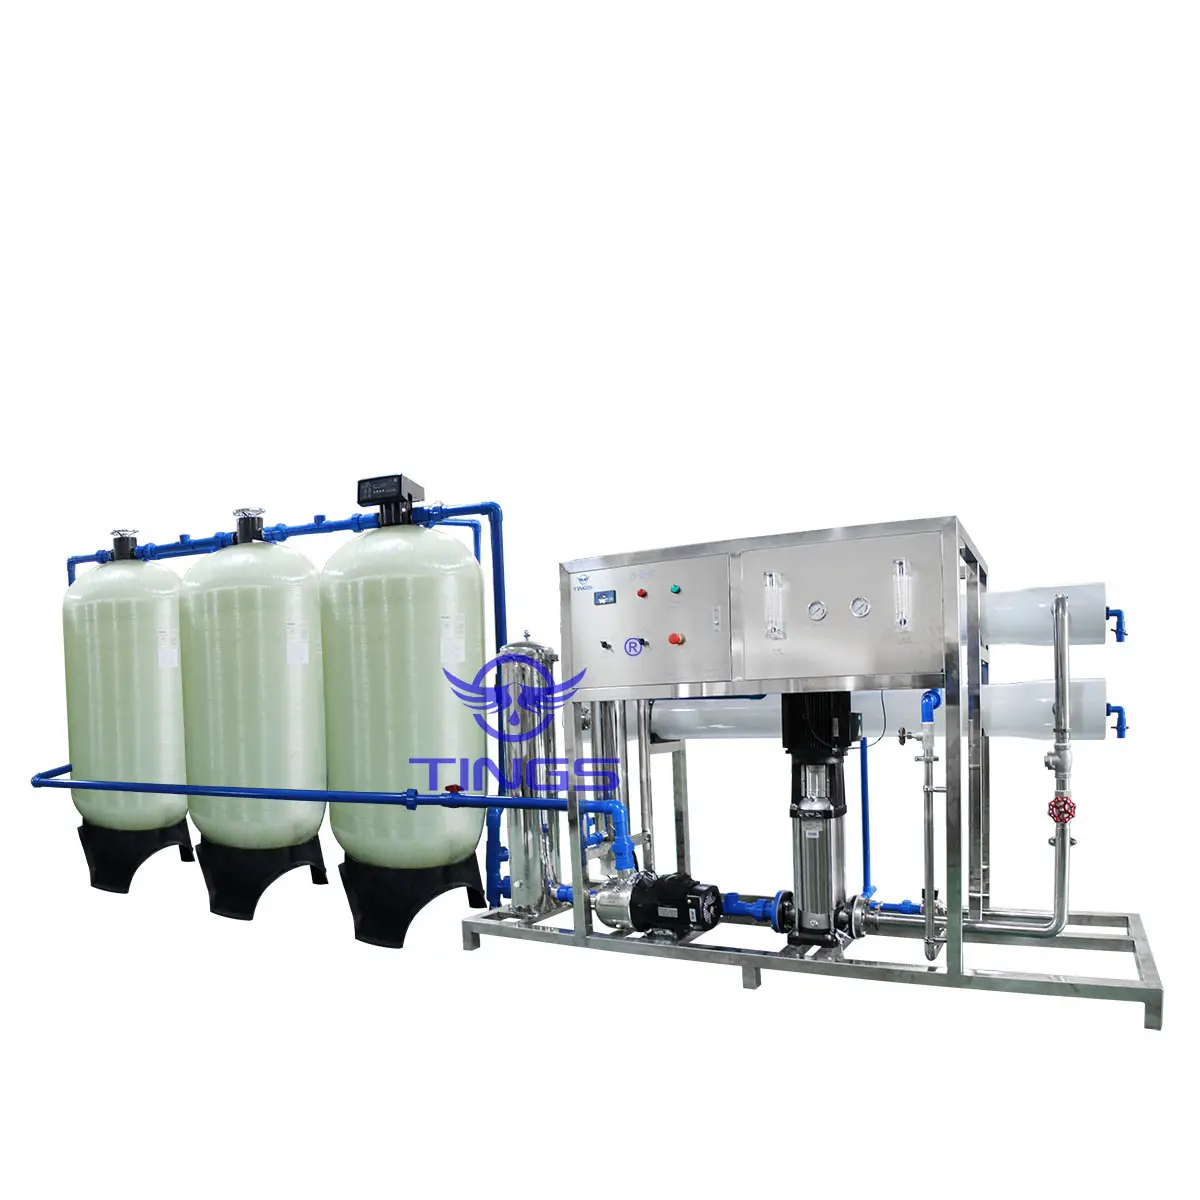 نظام تصفية المياه مصنع معالجة مياه تنقية 5000 لتر في الساعة